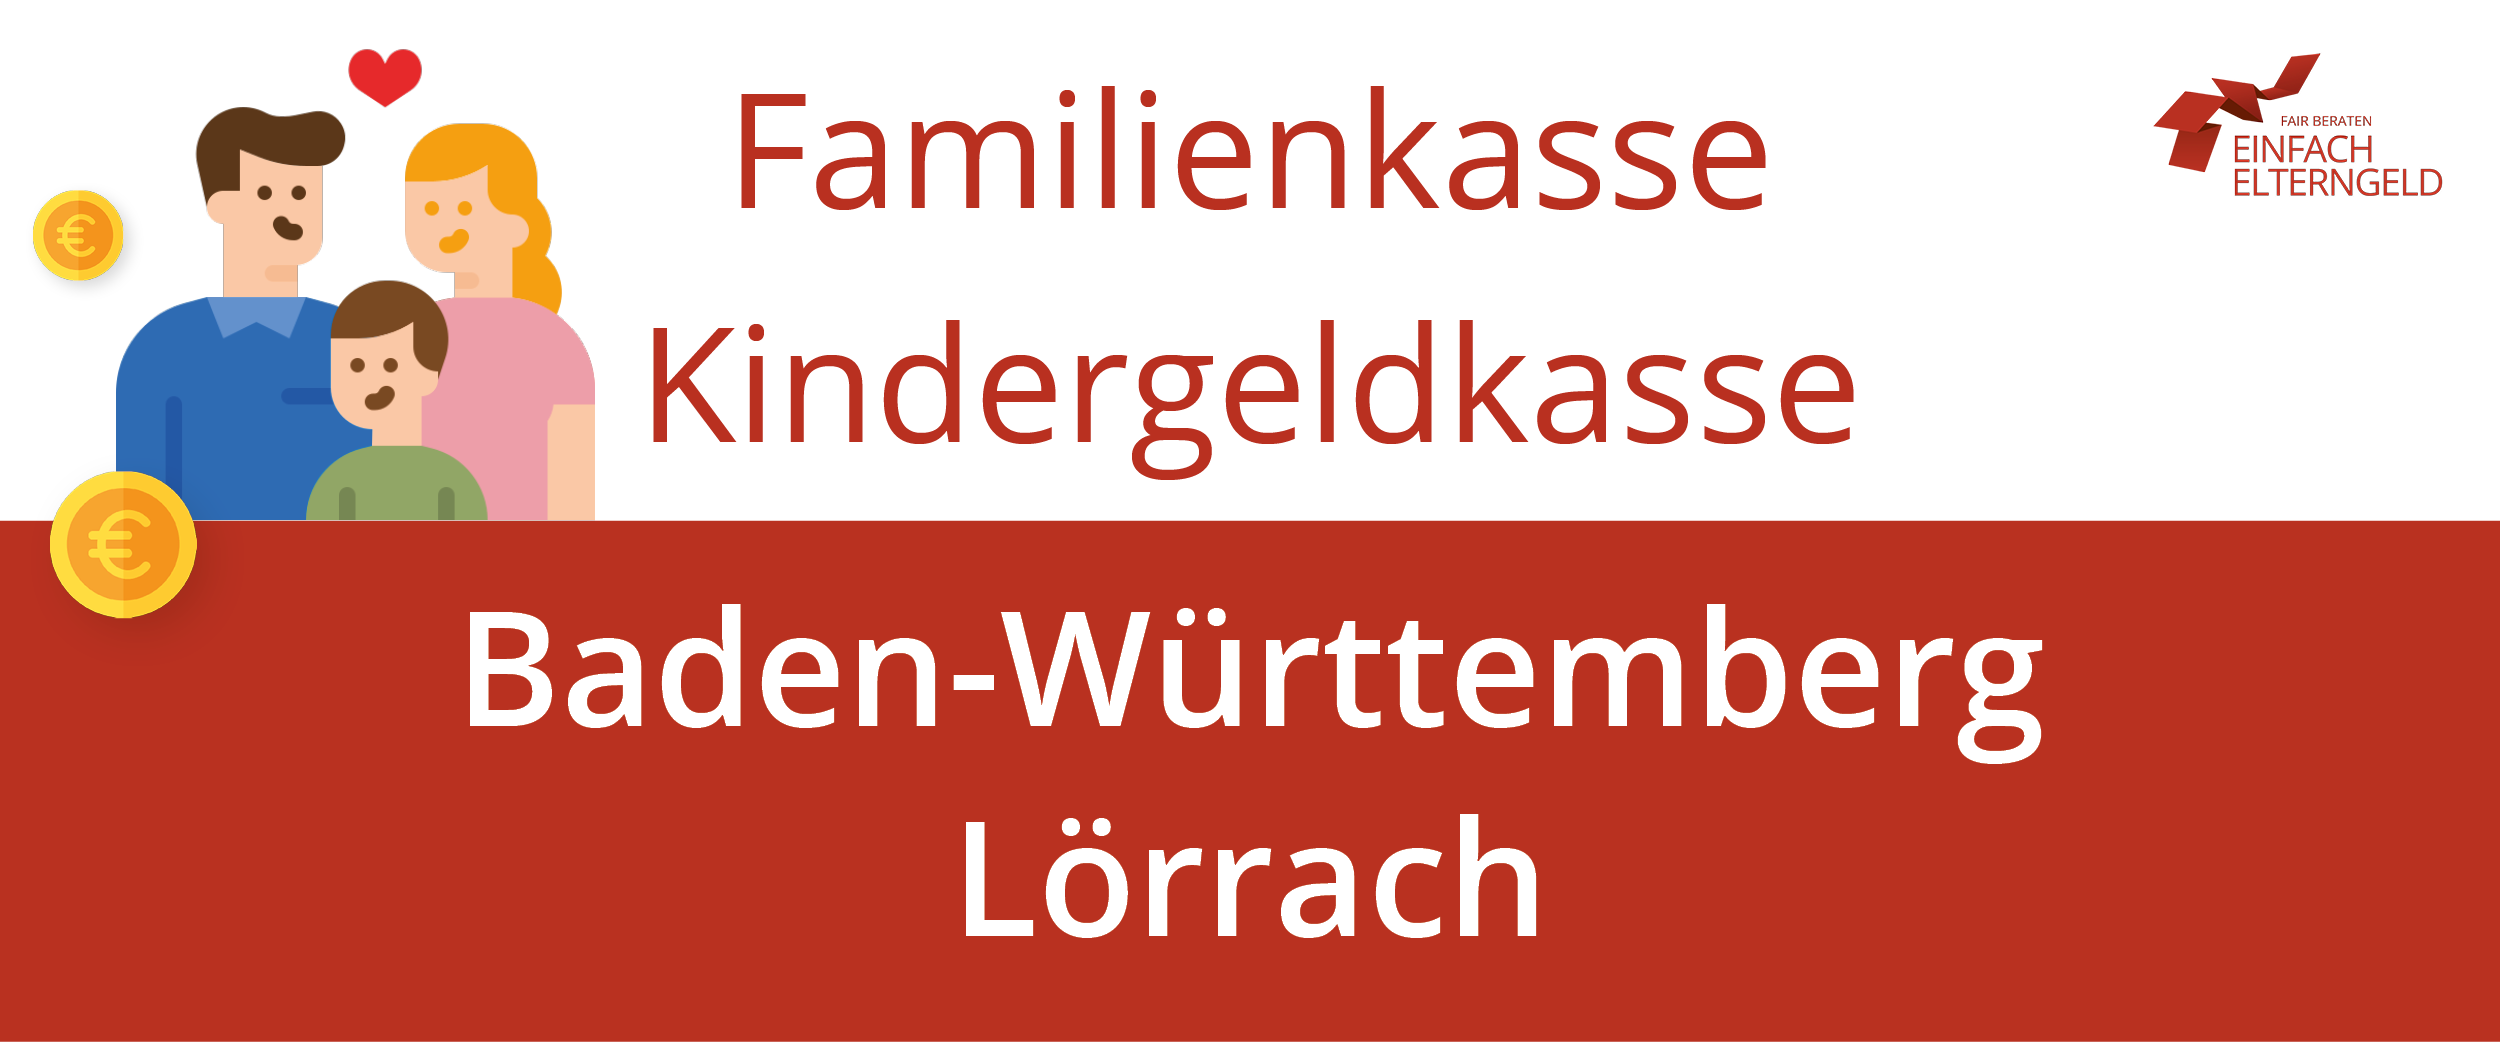 Familienkasse Kindergeldkasse Baden-Württemberg Lörrach - So erreichen Sie Ihre Familienkasse.